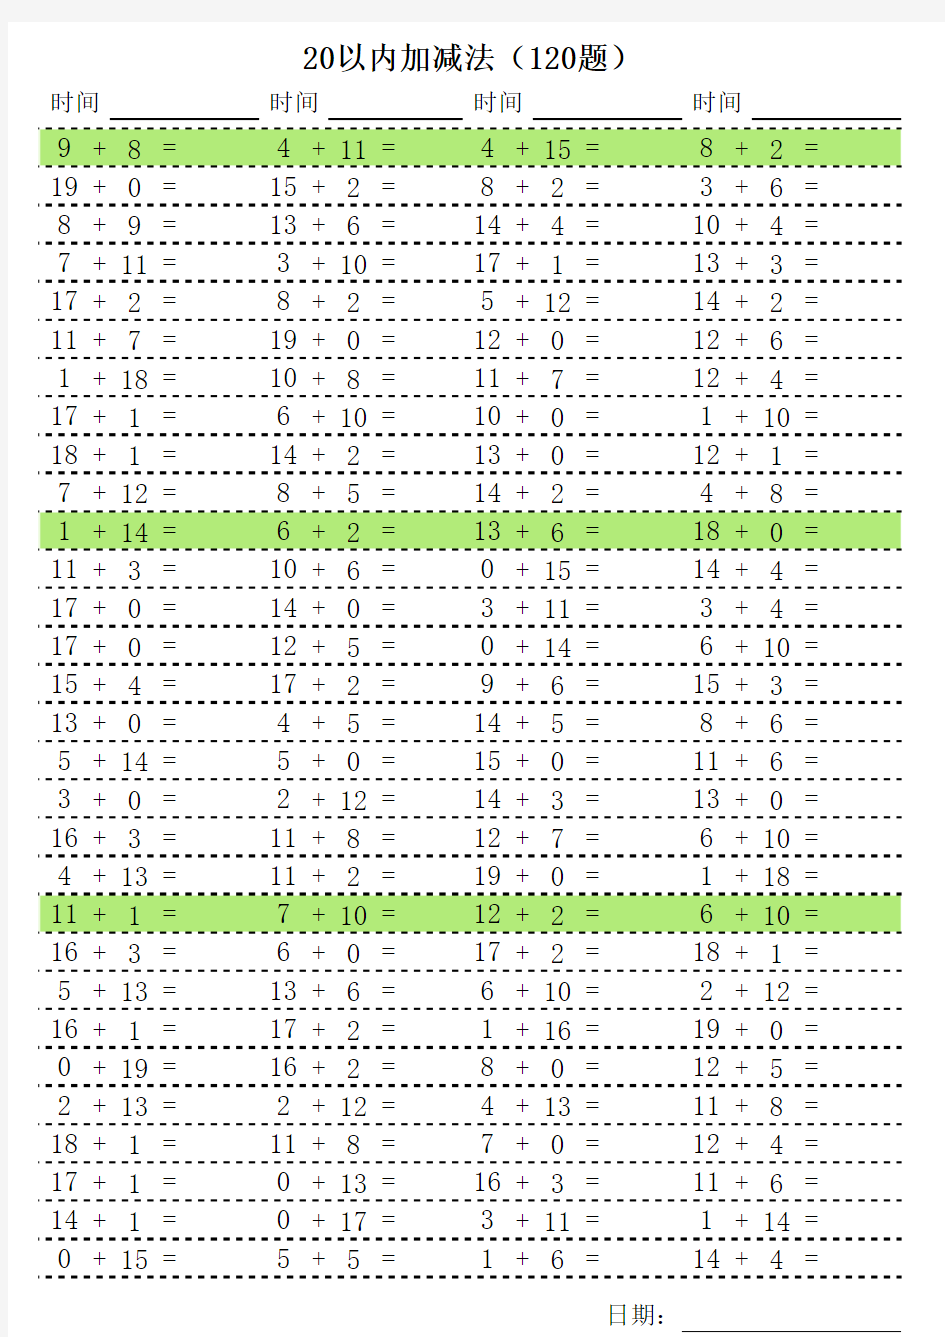 20以内加减法自动出题表格(3 sheets)